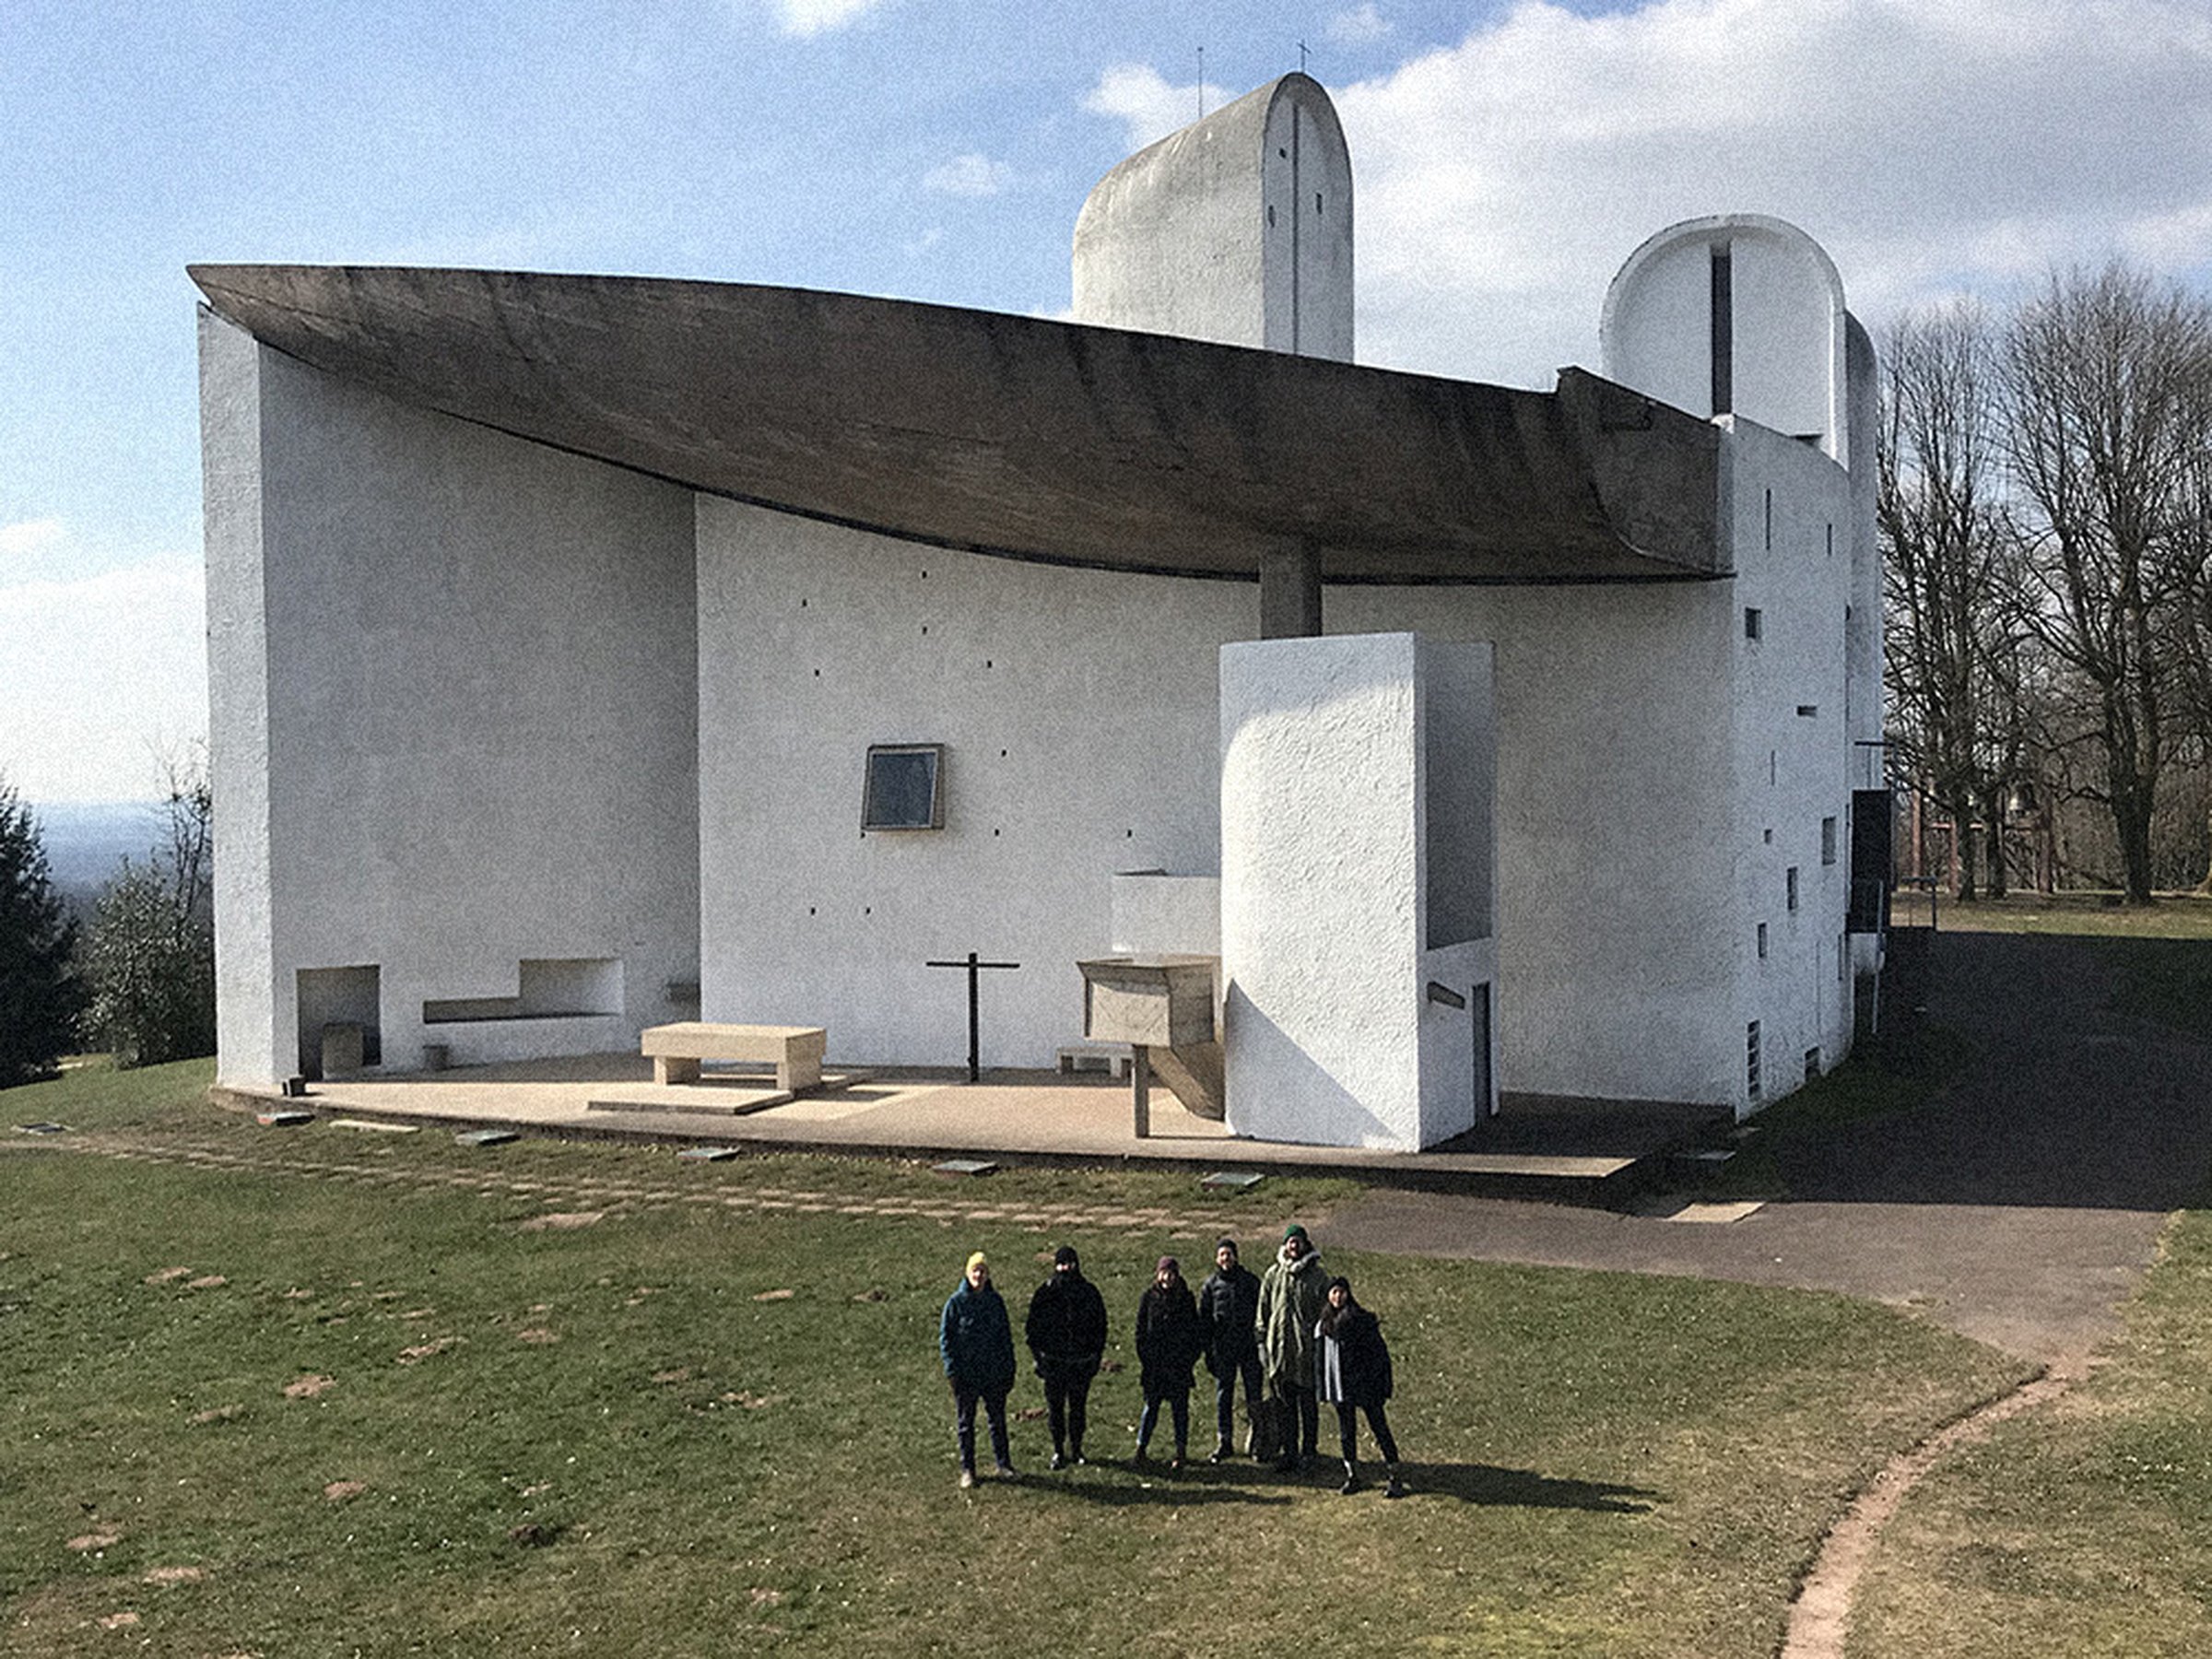 Our studio trip to Le Corbusier’s Notre-Dame du Haut in Ronchamp, France